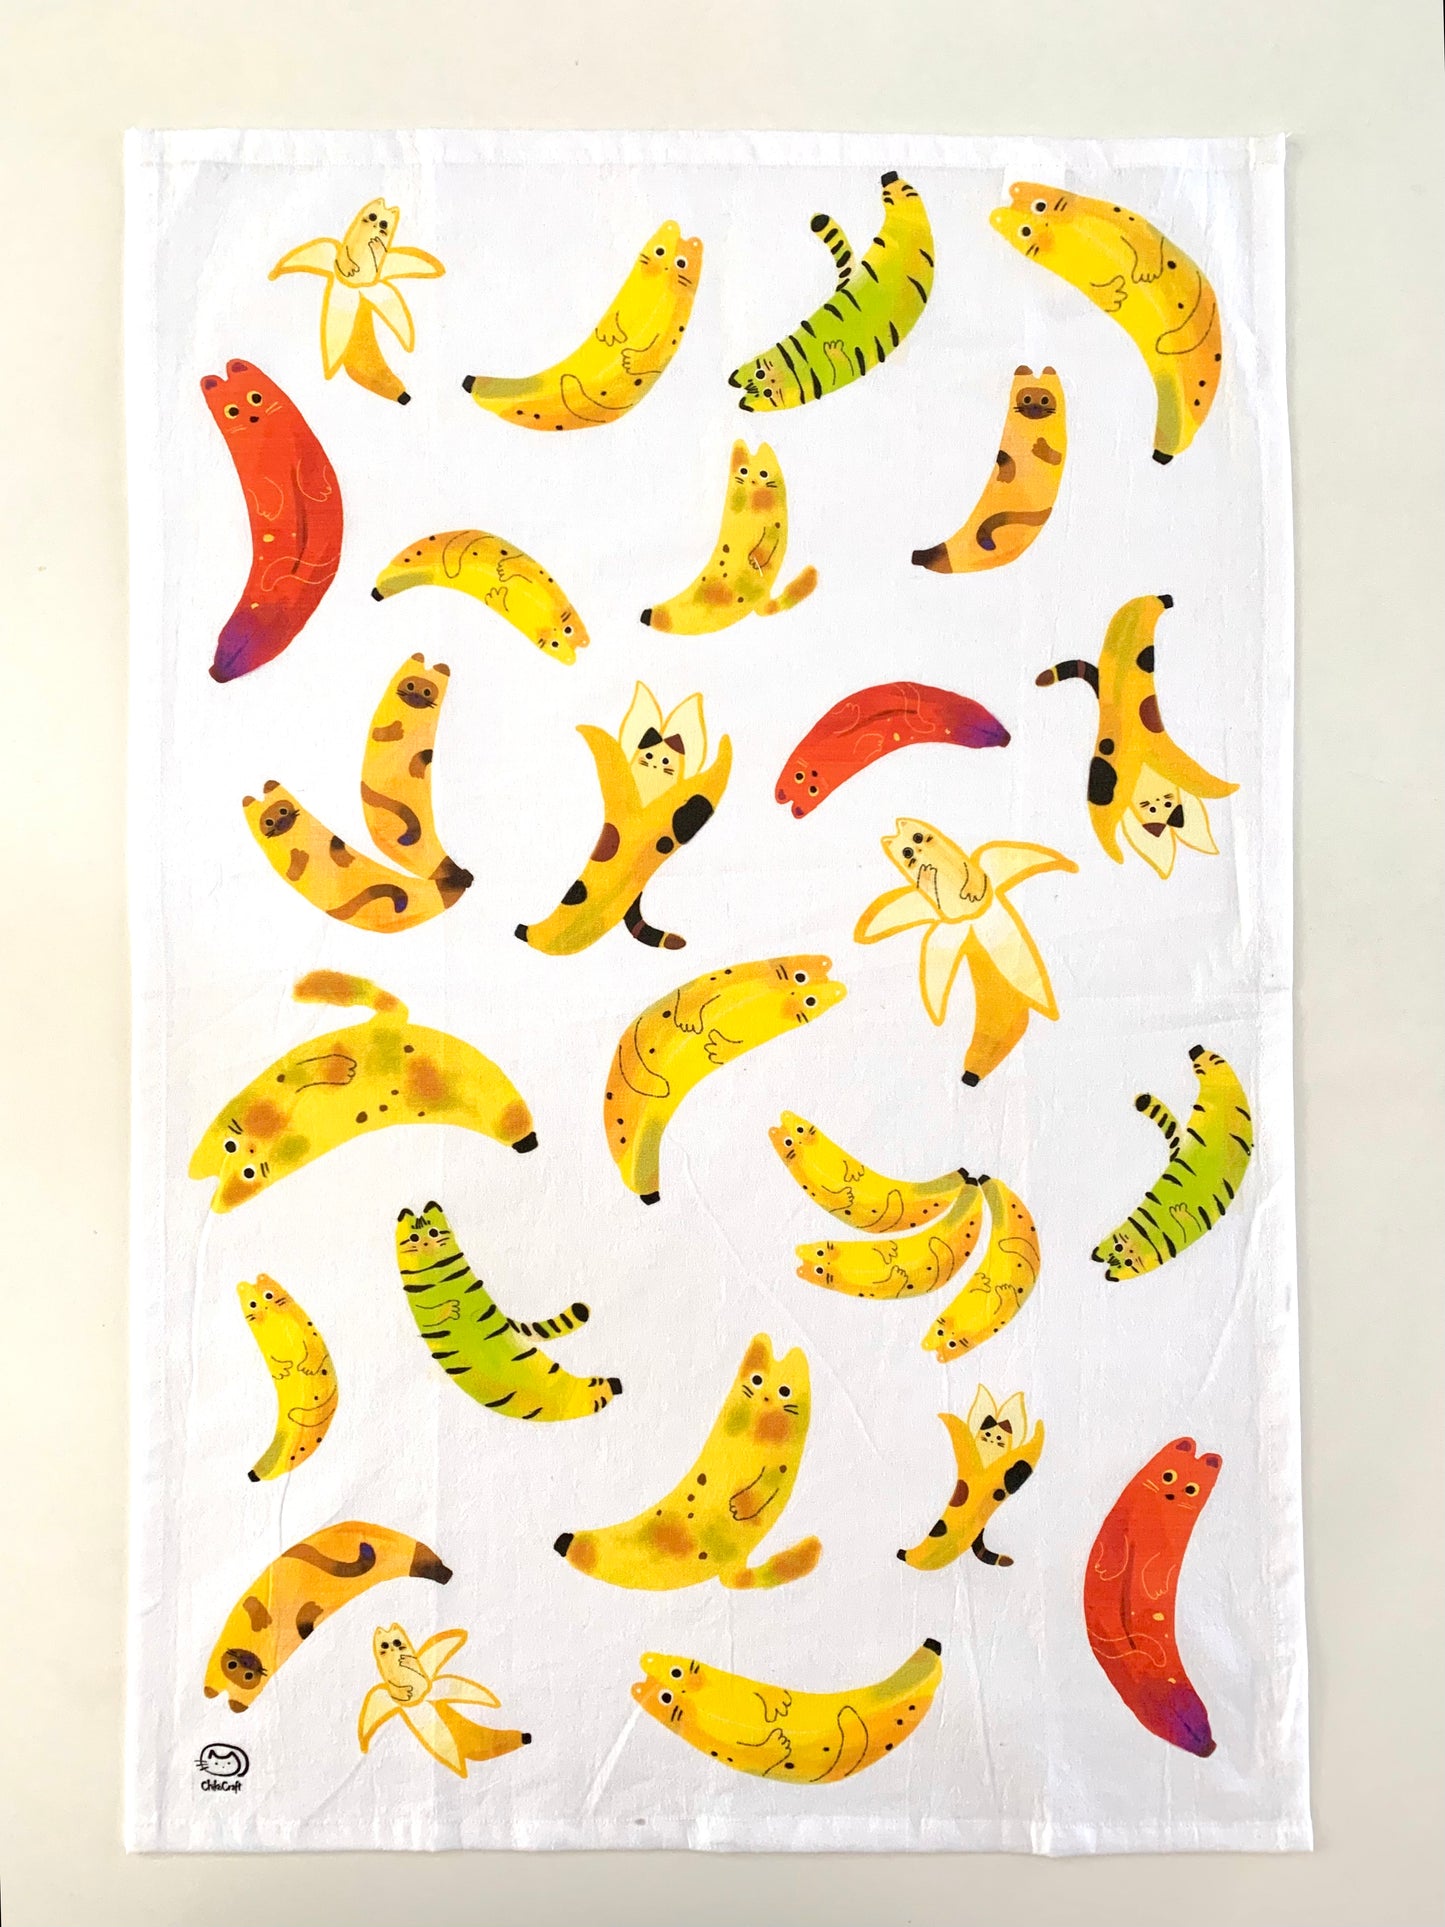 Banana Cat Towel